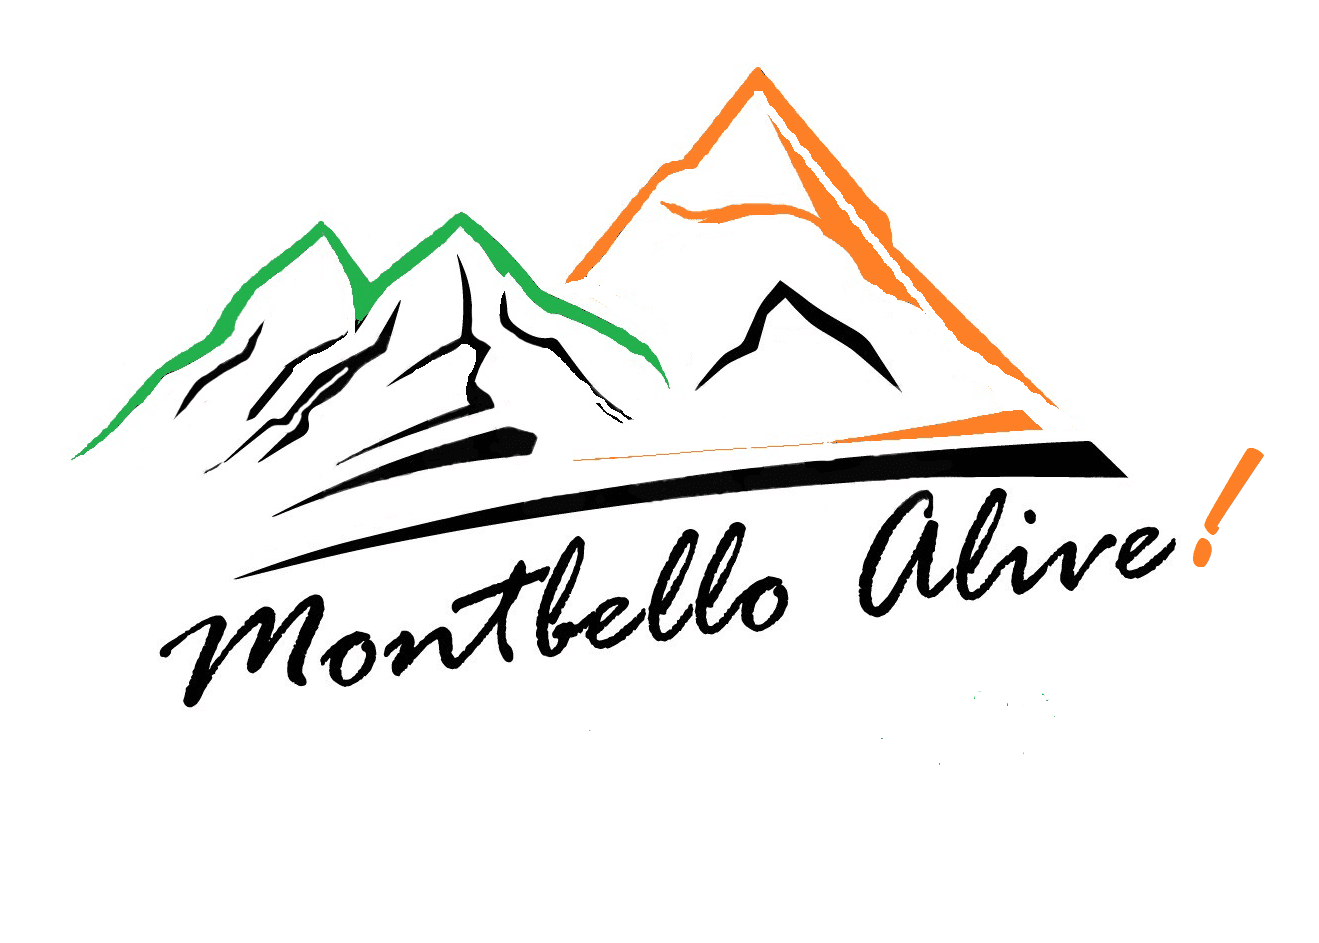 Montbello Live!